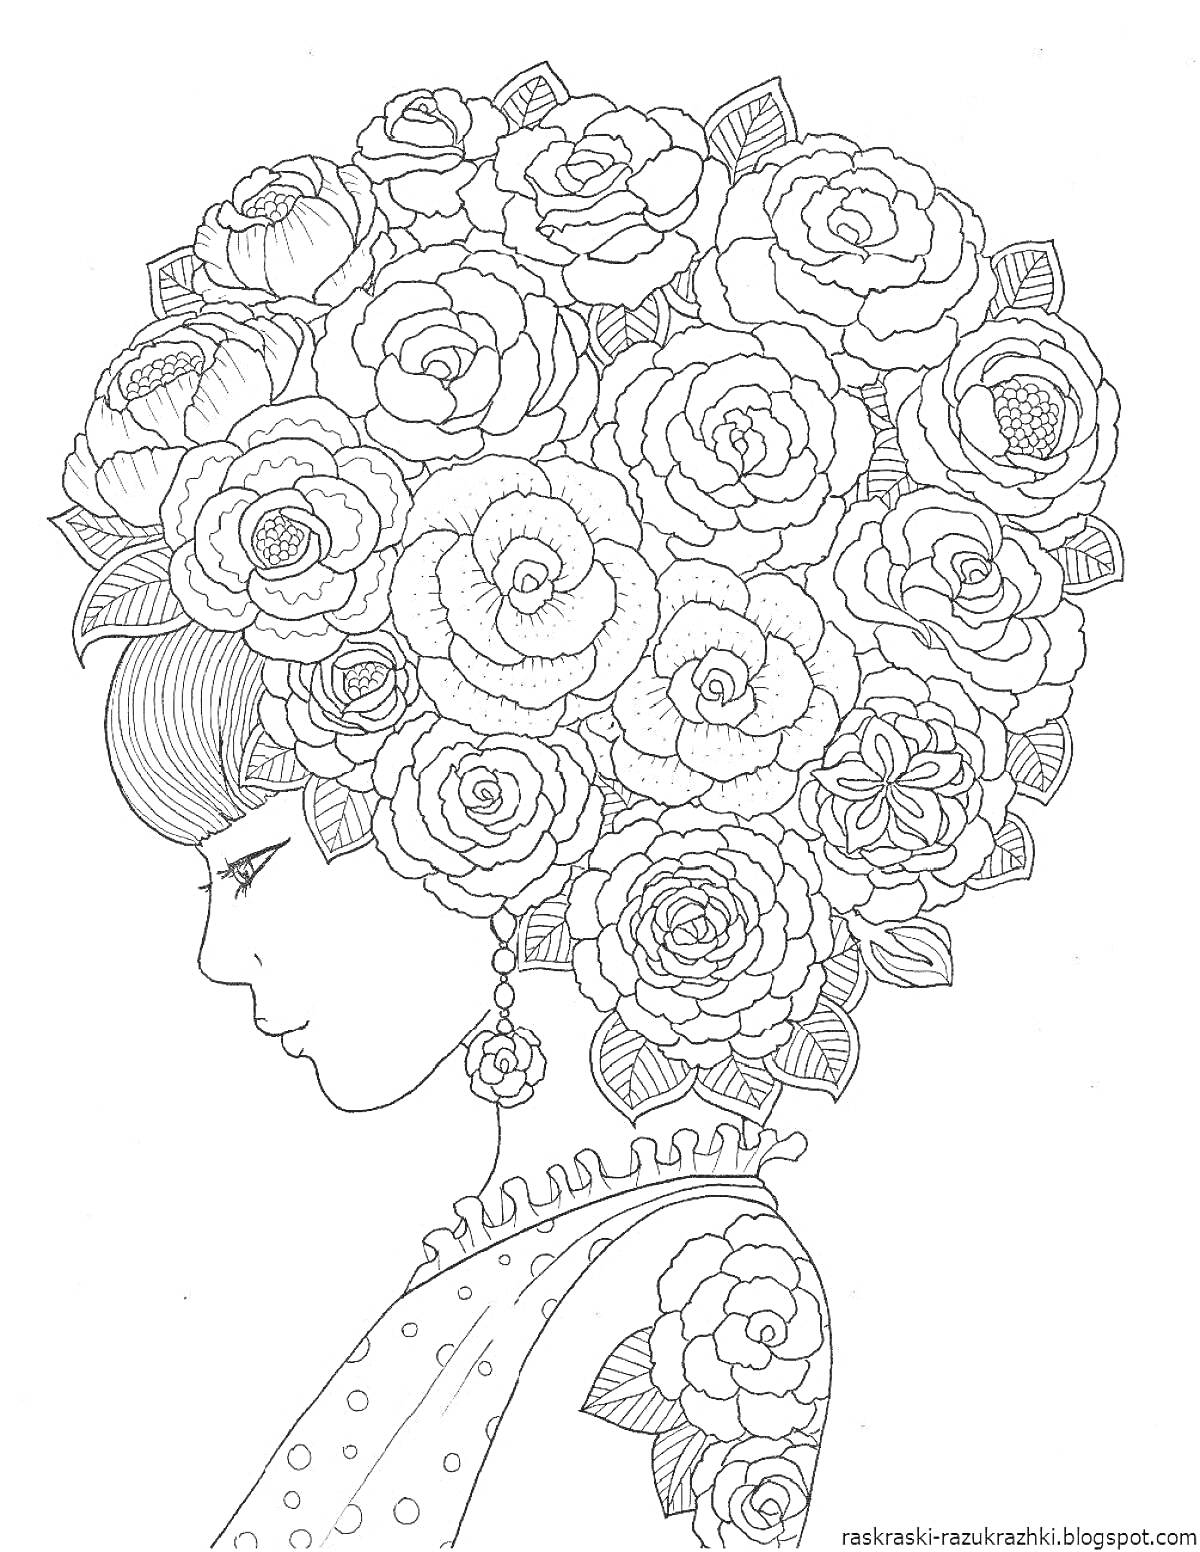 Раскраска Девушка в цветах, профильный портрет с цветами в прическе, серьга, наряд с пумпонами